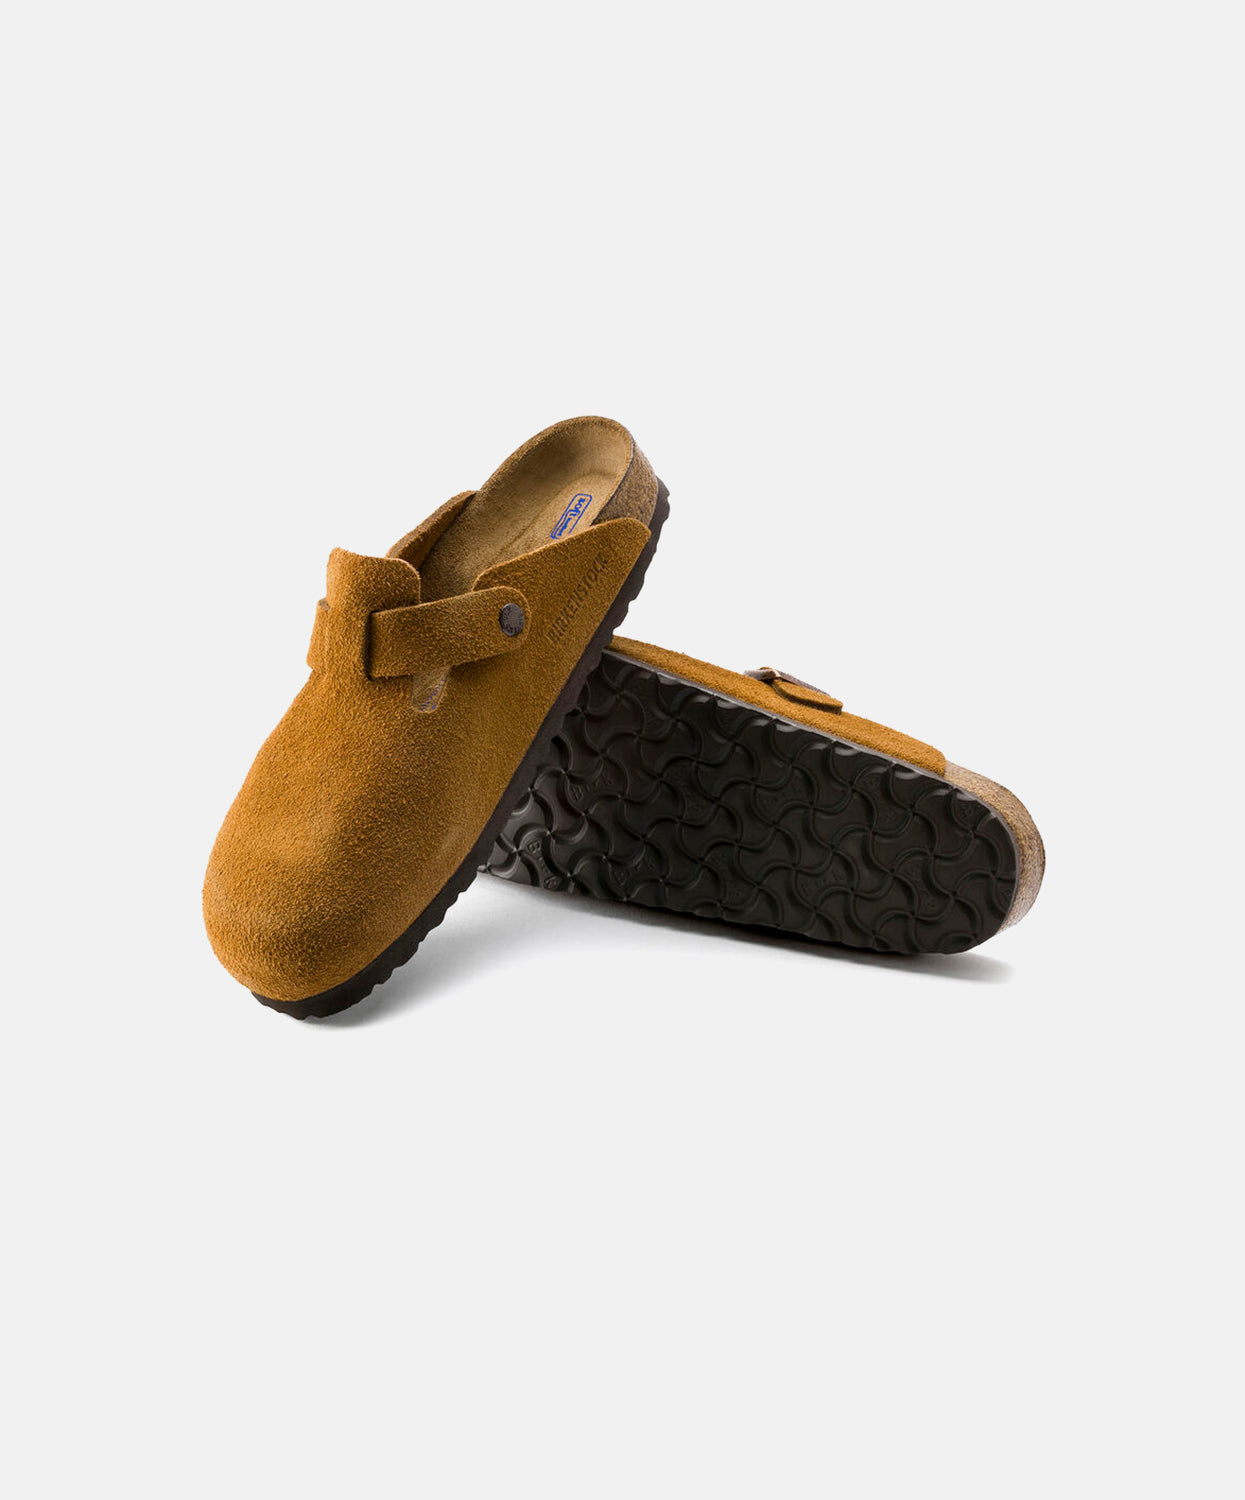 Birkenstock Arizona Soft Footbed Suede Leather Sandal